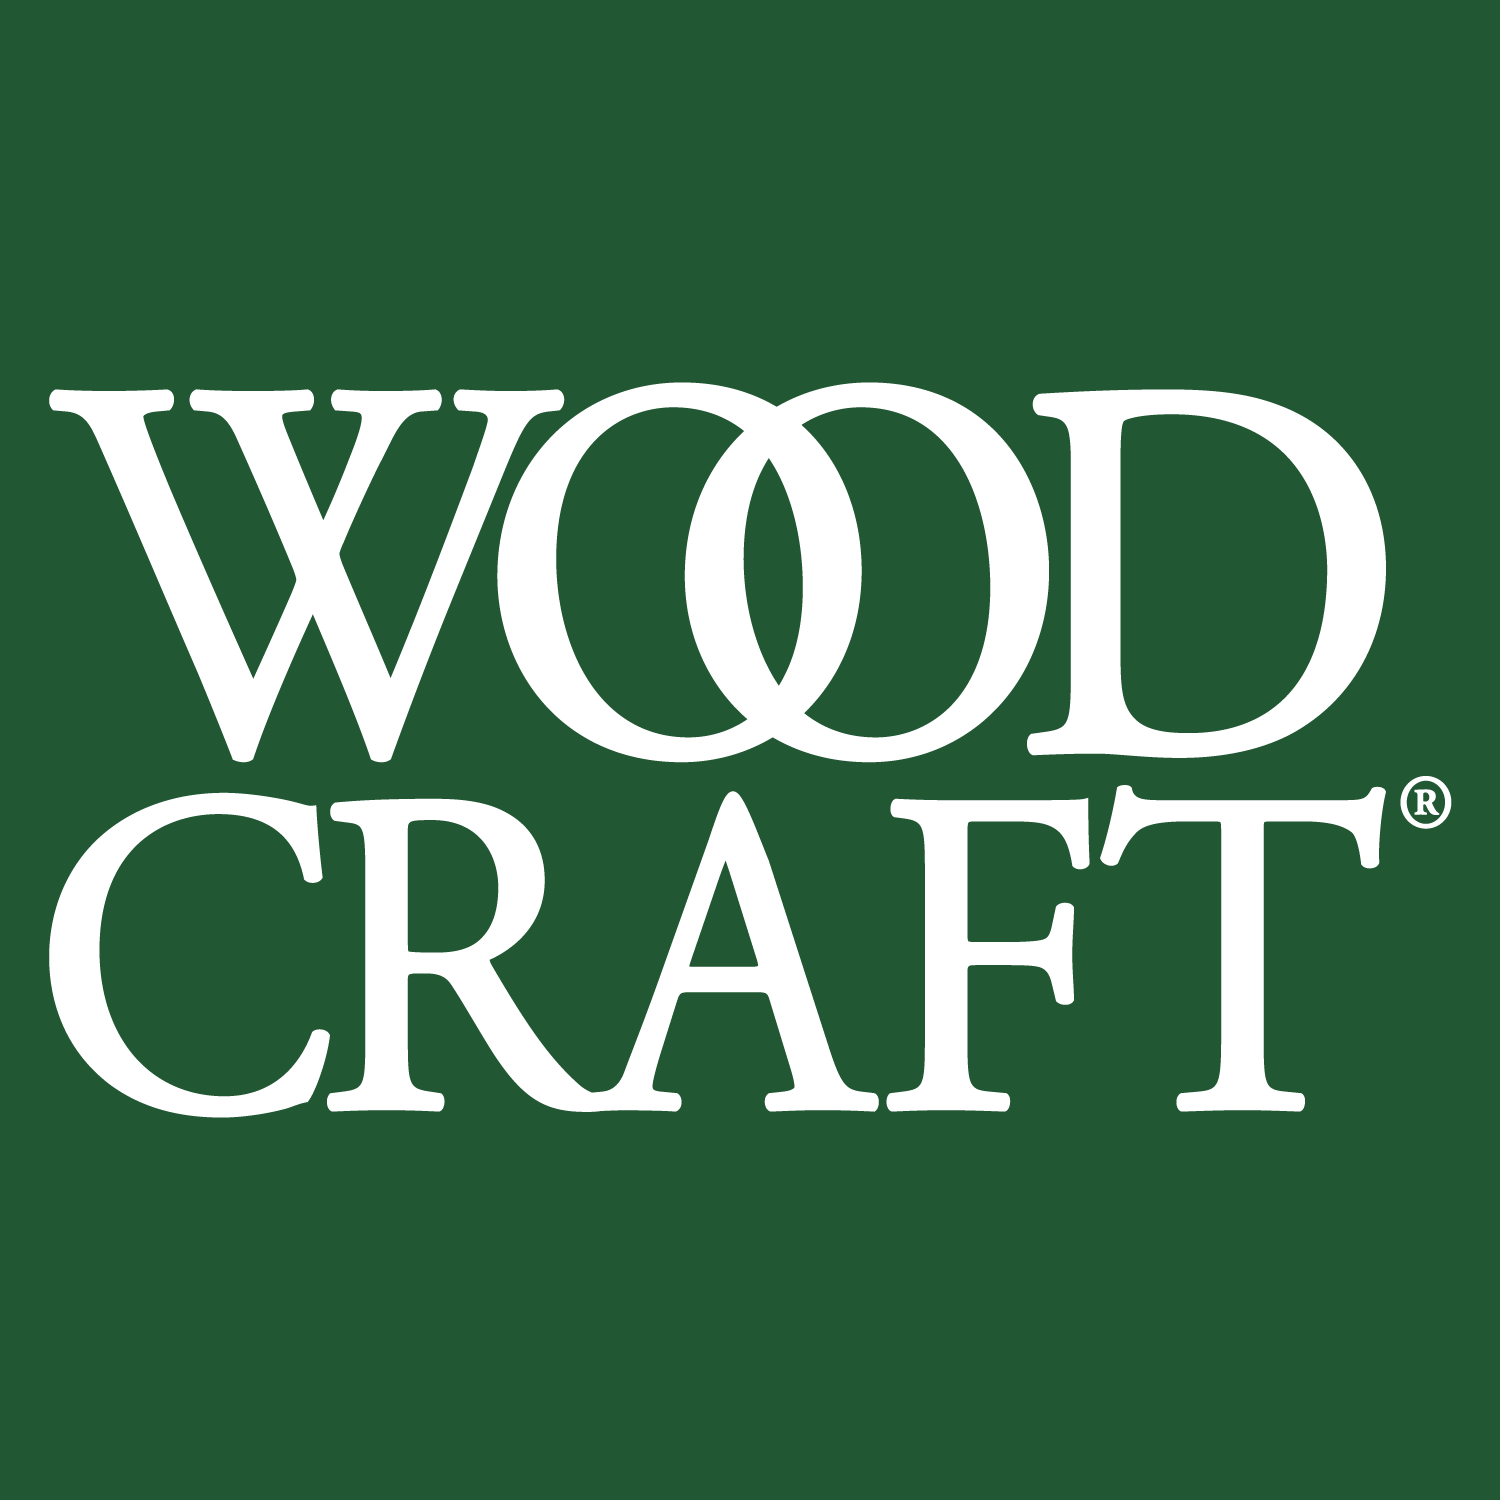 (c) Woodcraft.com